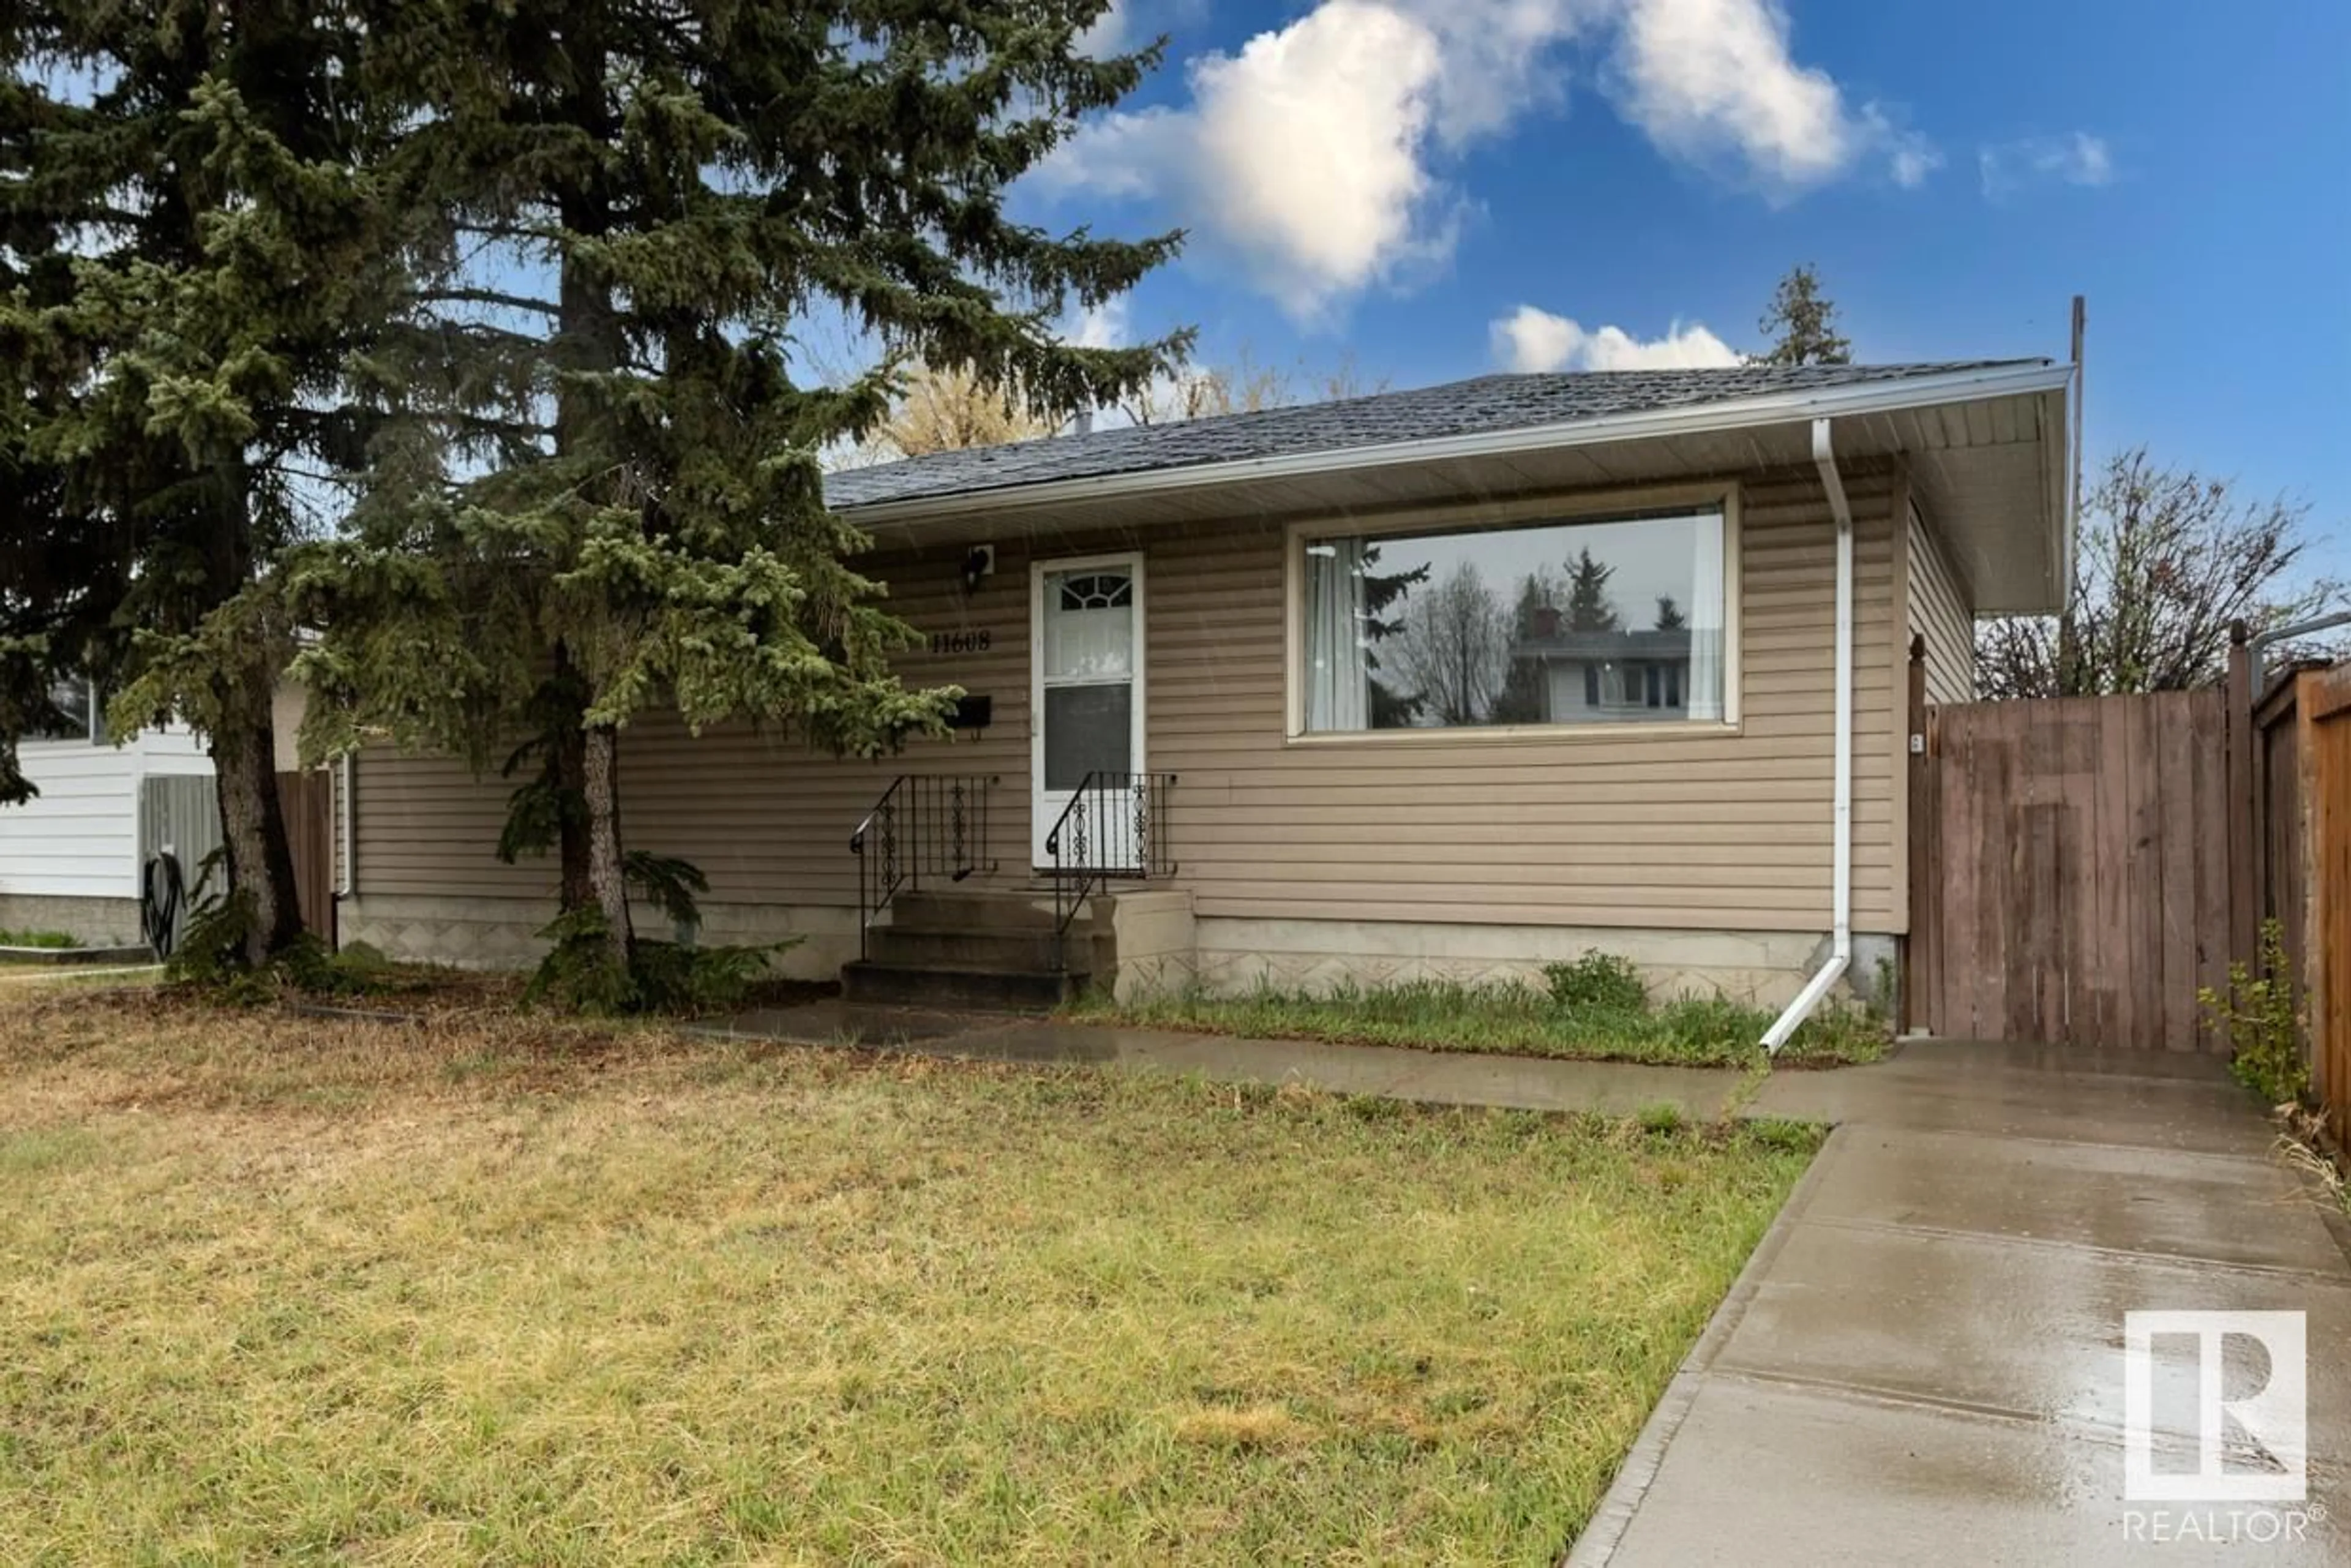 Home with vinyl exterior material for 11608 134 AV NW, Edmonton Alberta T5K4M4